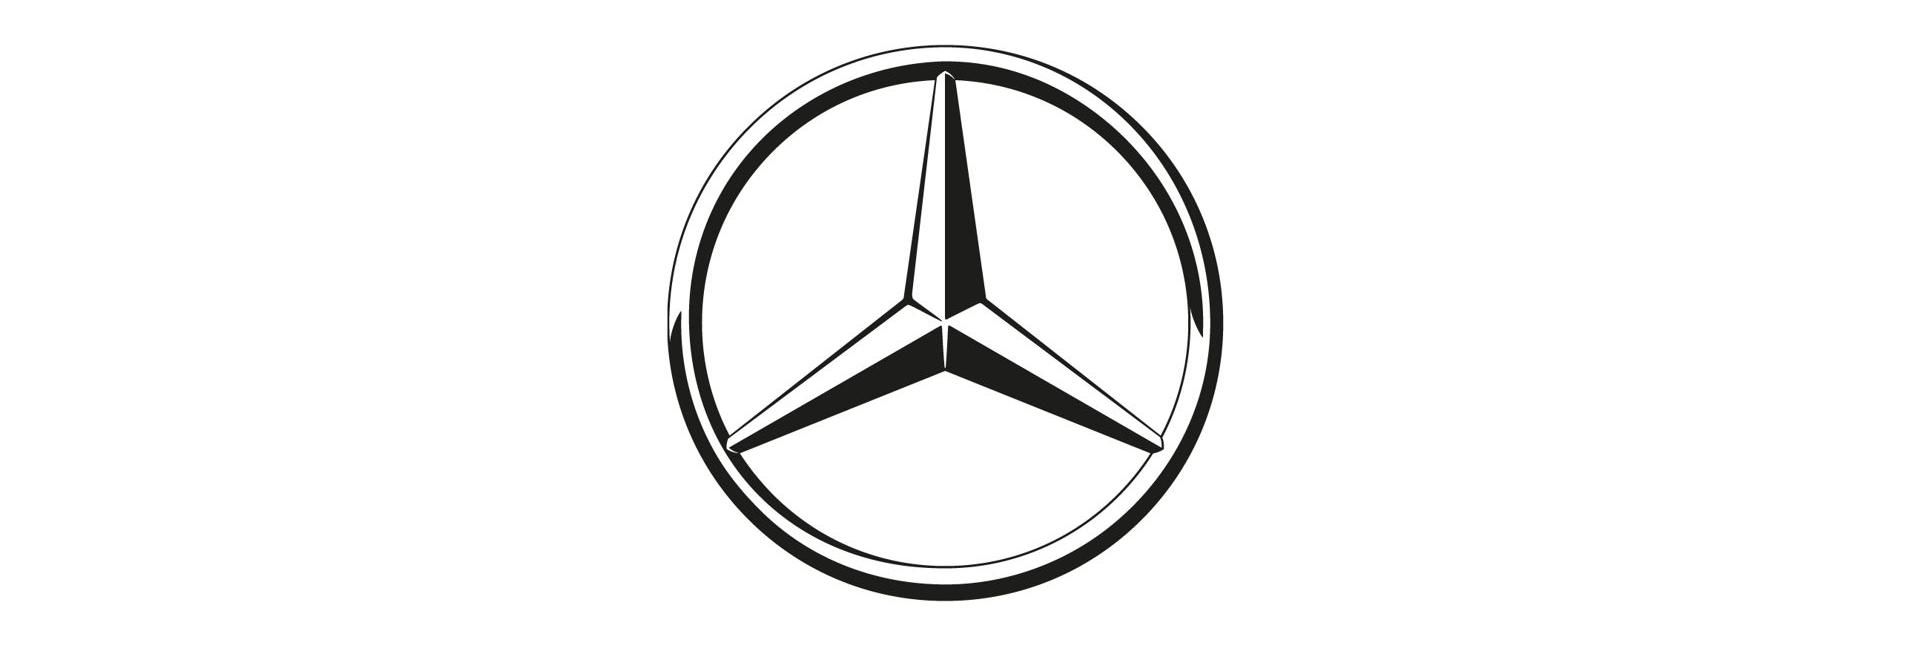 Tisztán elektromos jármű gyártását indítja a Mercedes-Benz Magyarországon - VIDEÓ RIPORT